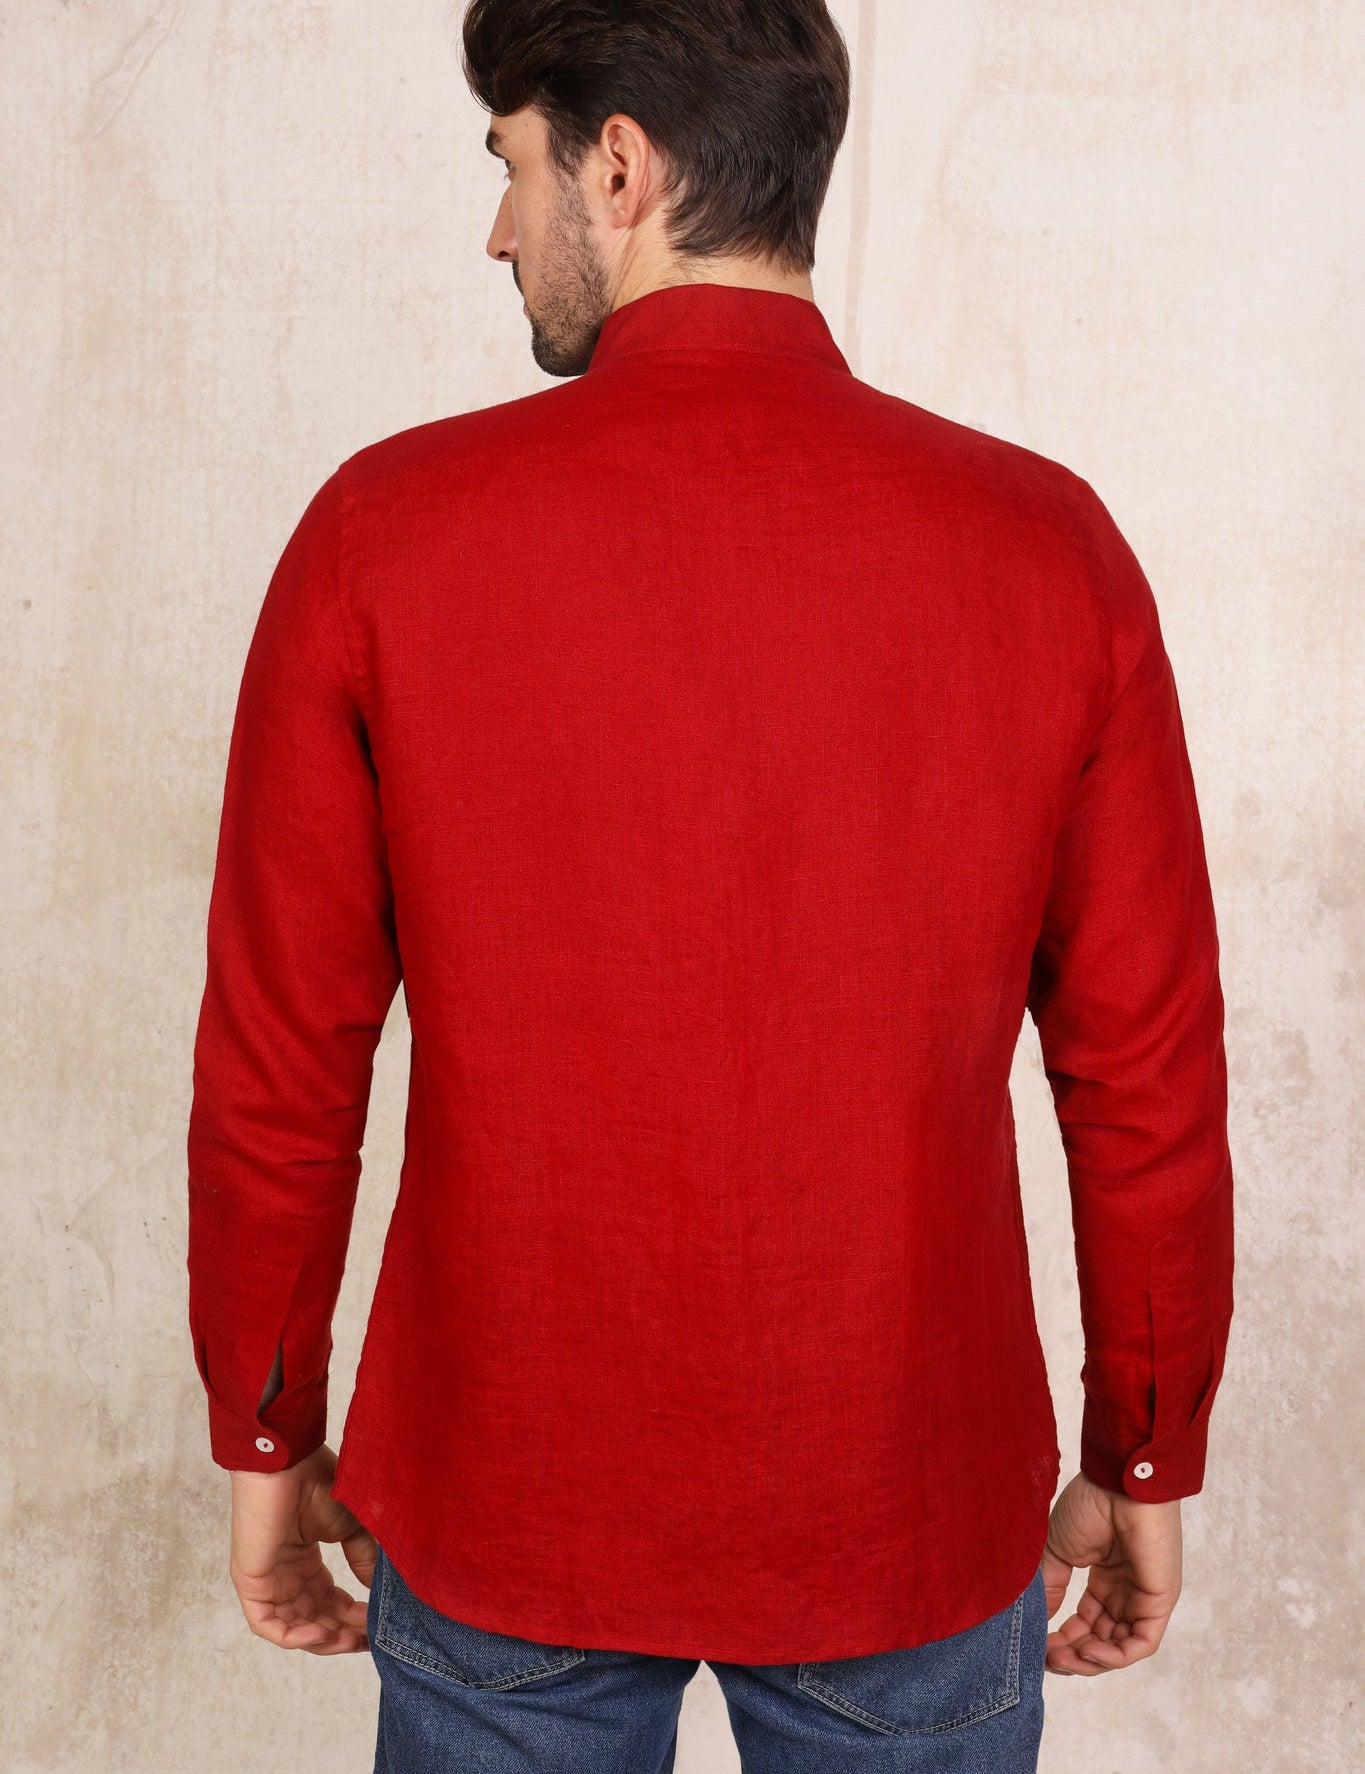 dark-red-mens-linen-shirt-back-view_12a0ba47-c608-452d-9b09-6a6ebde54d75.jpg